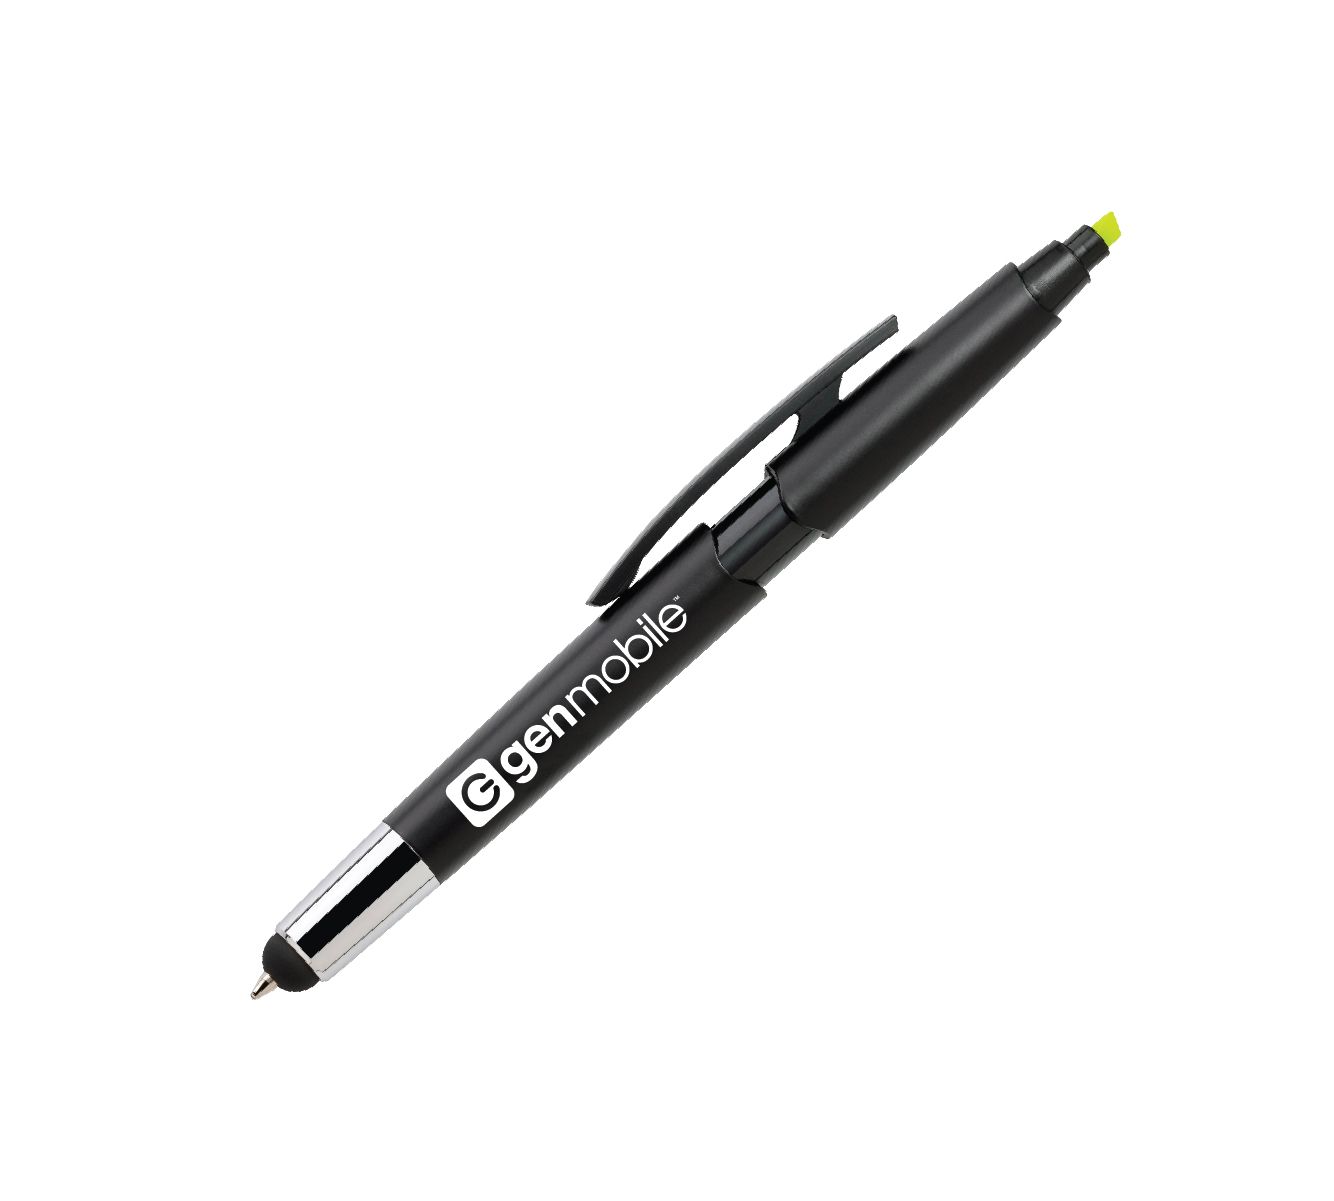 3-In-1 Ballpoint Pen/Highlighter/Stylus with Gen Mobile Logo